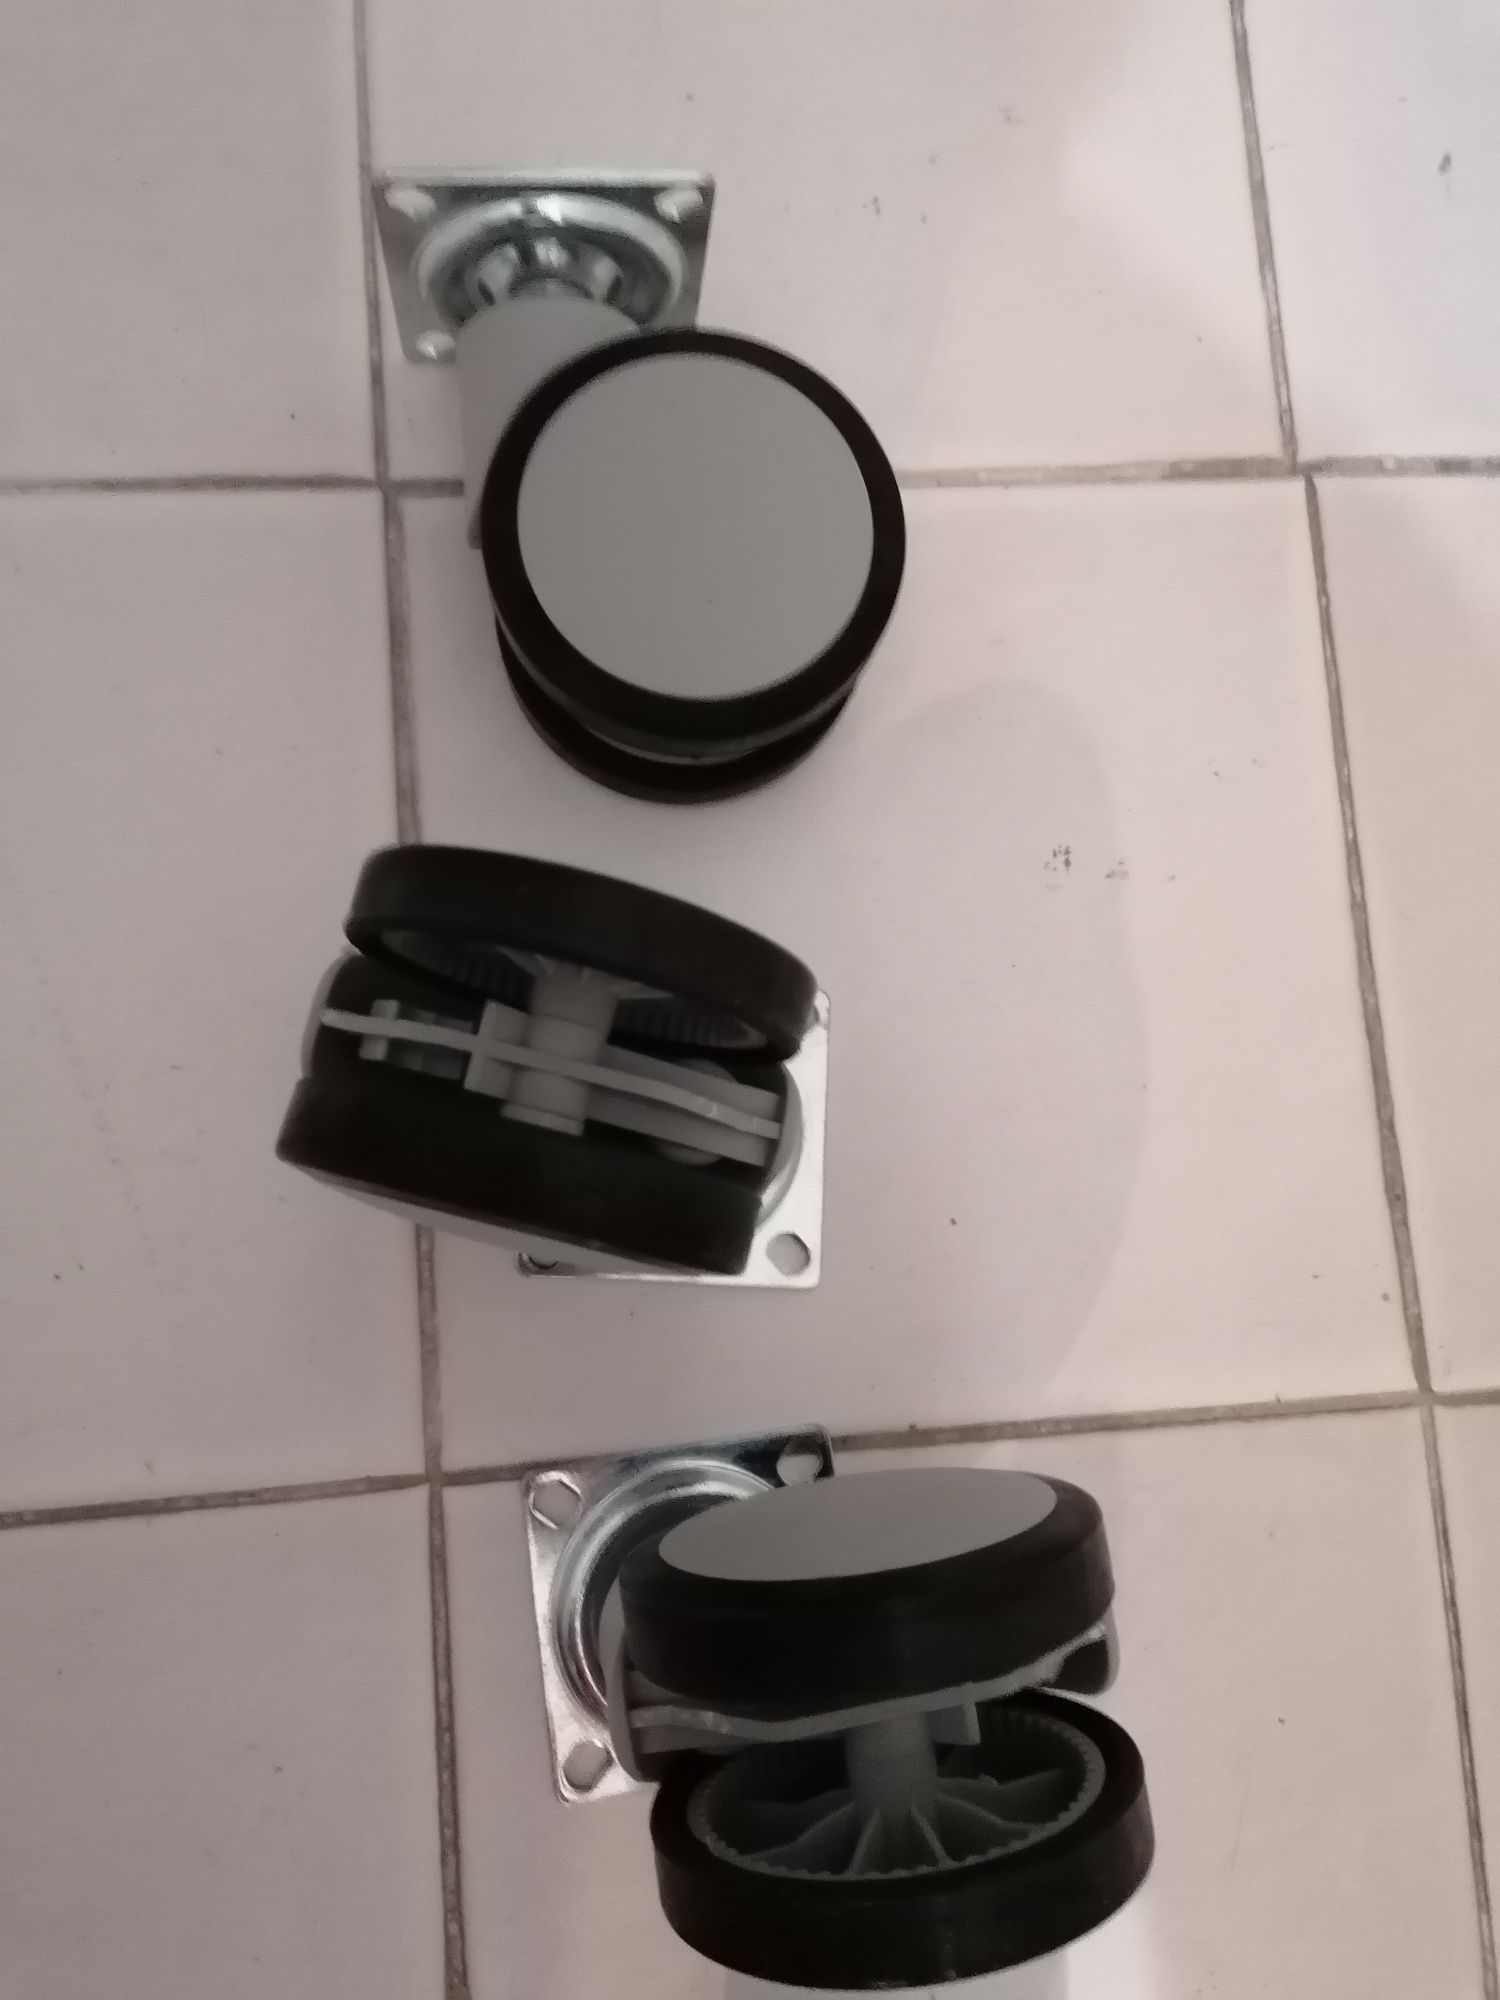 5 Rodízios / Rodas metal e plástico preto e cinza.